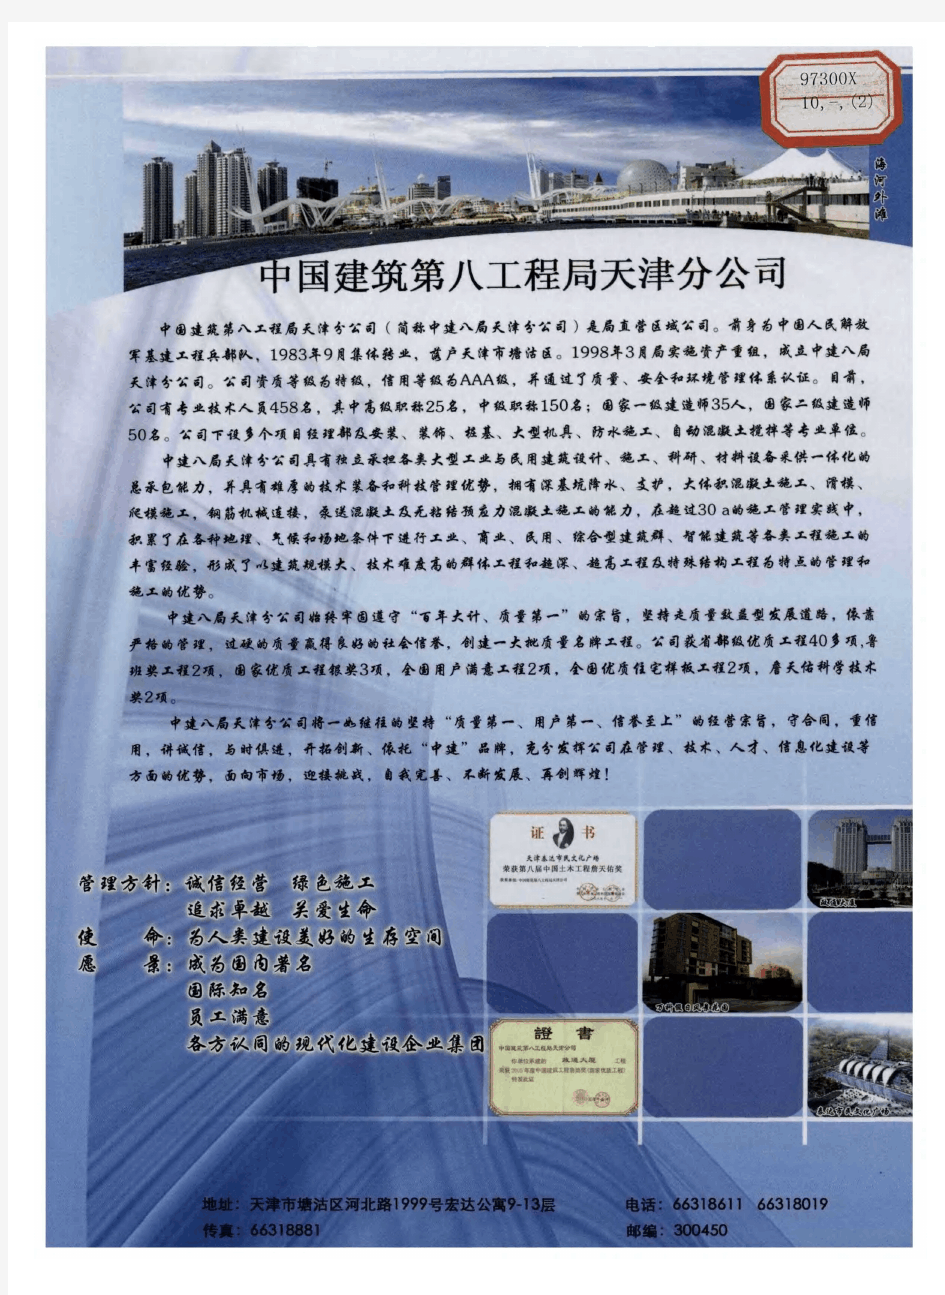 中国建筑第八工程局天津分公司